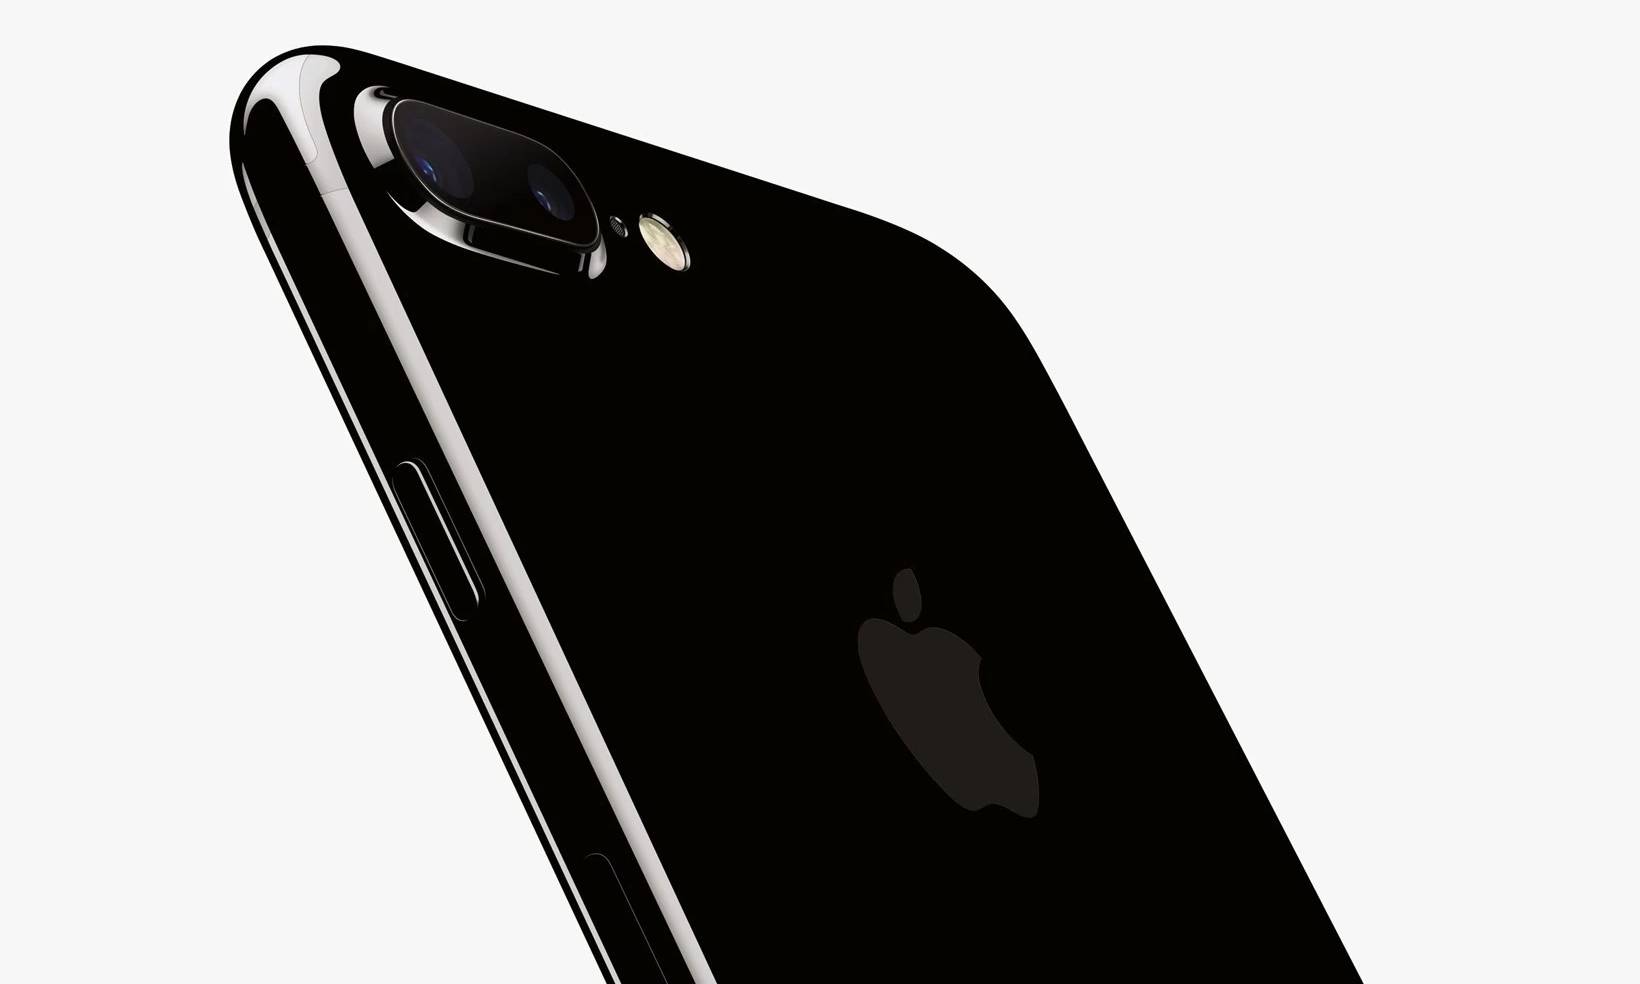 苹果承认亮黑色 iPhone 7 容易刮花,你确定还要